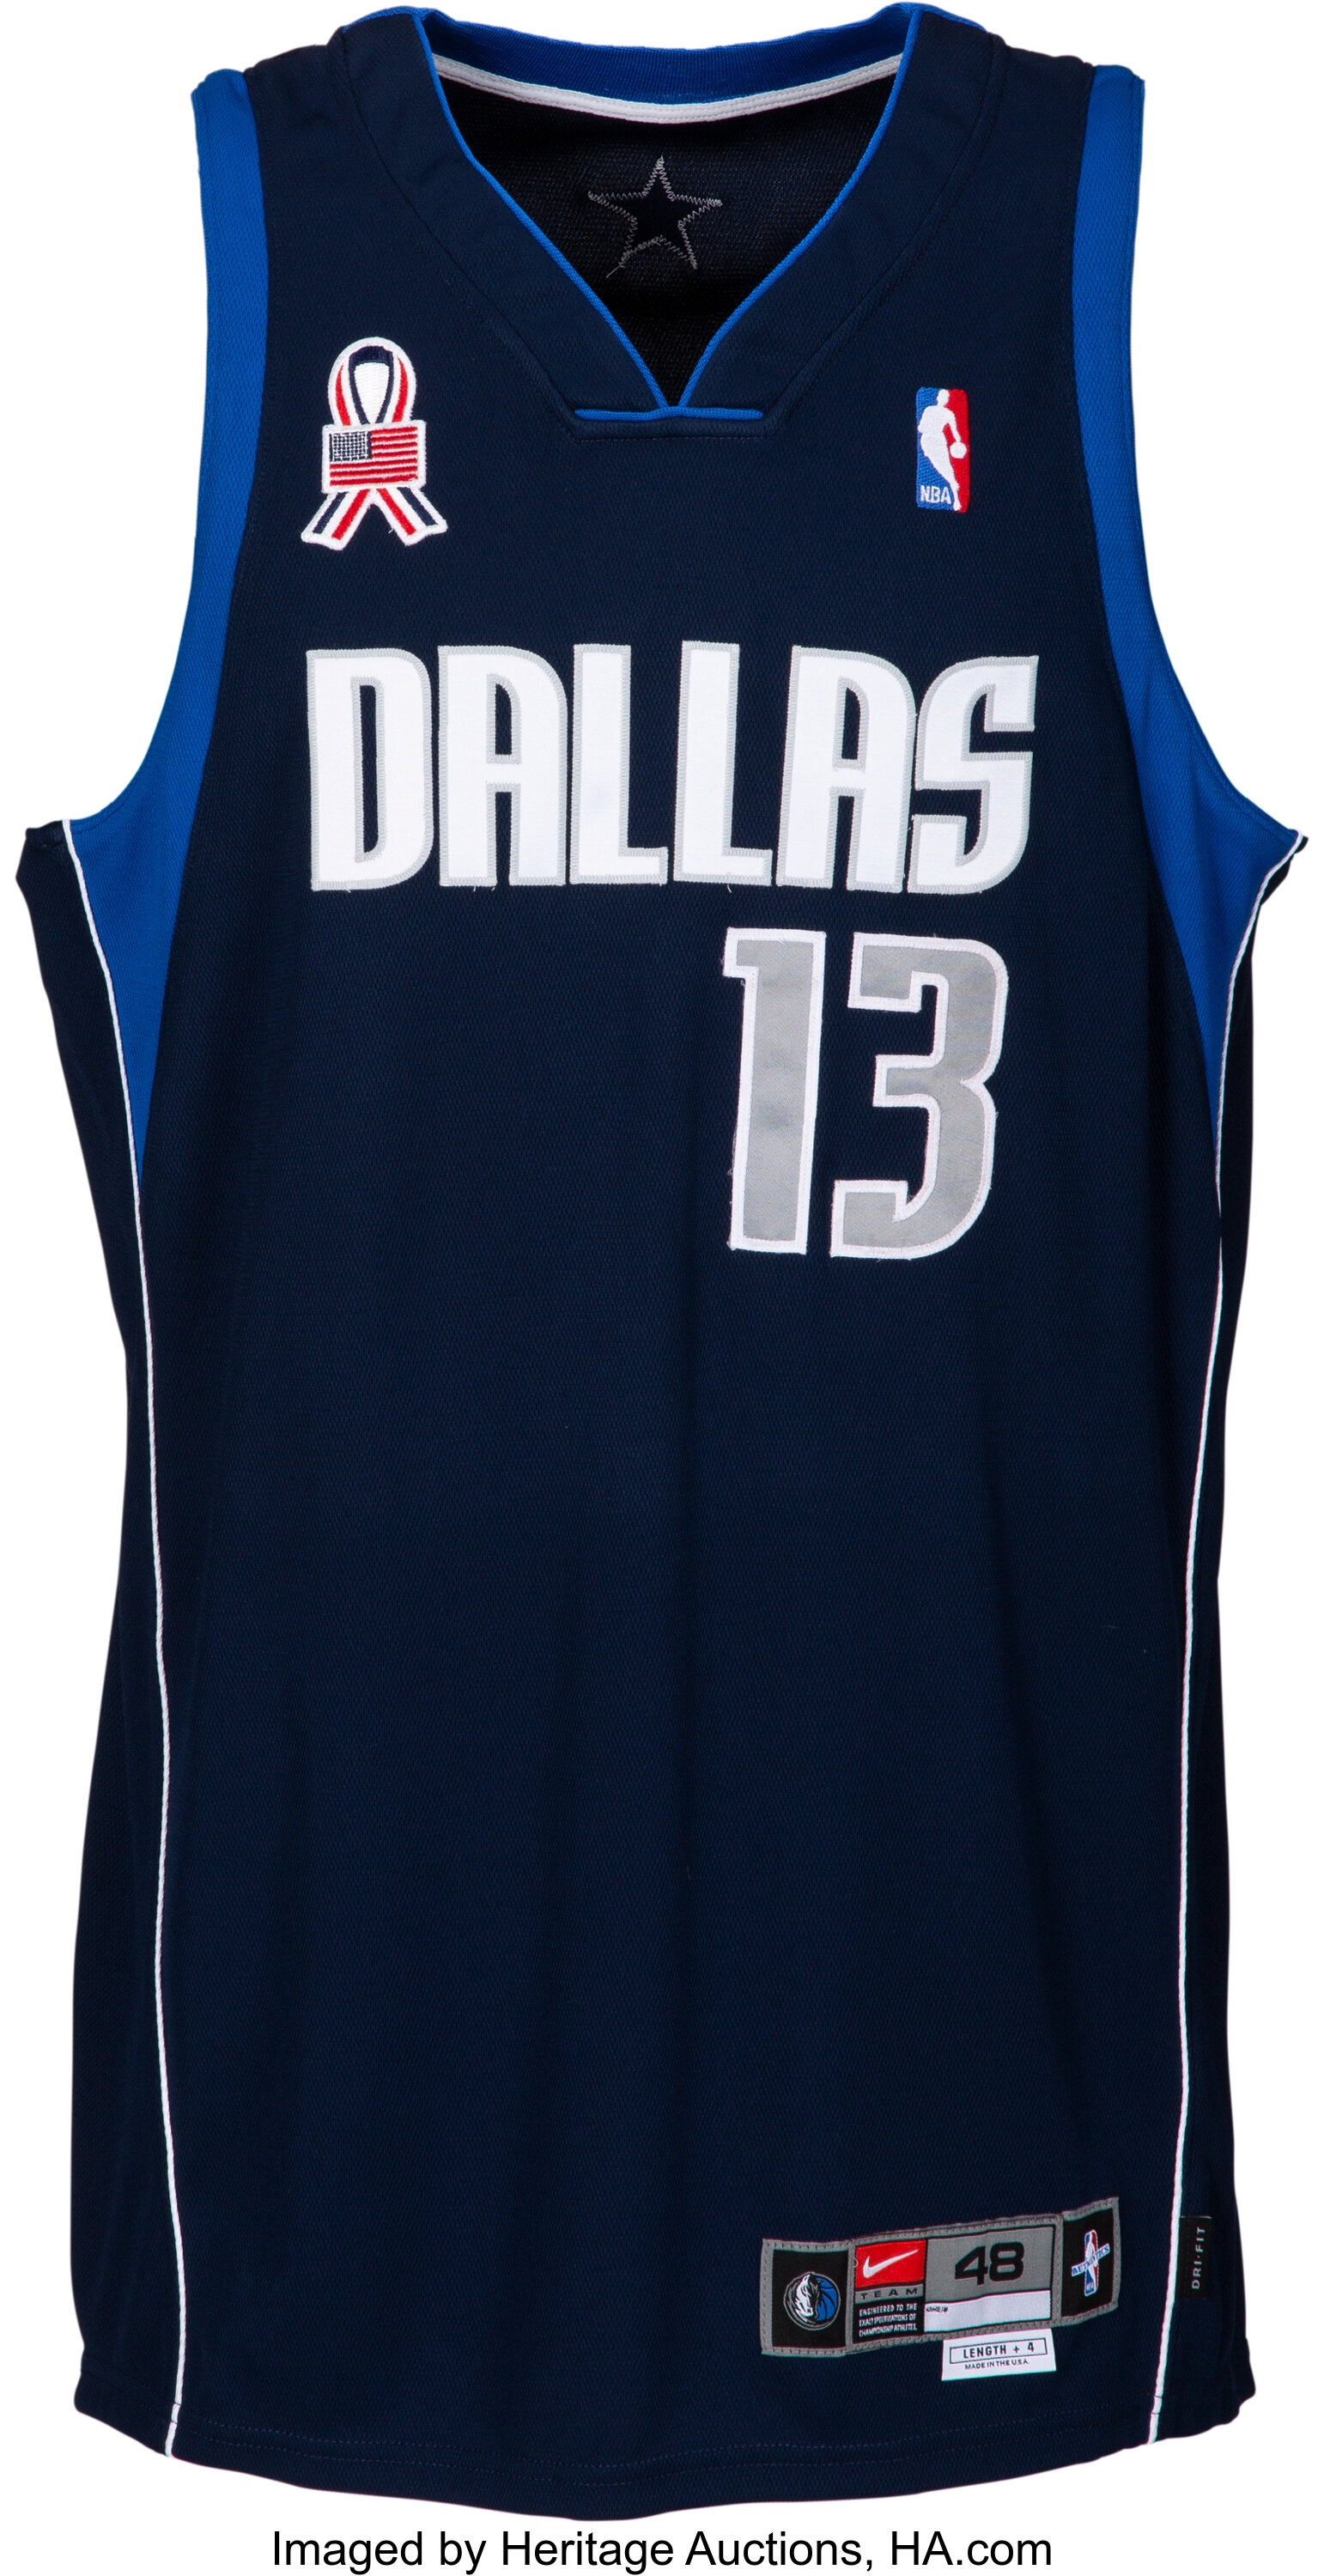 Dallas Mavericks Jerseys in Dallas Mavericks Team Shop 